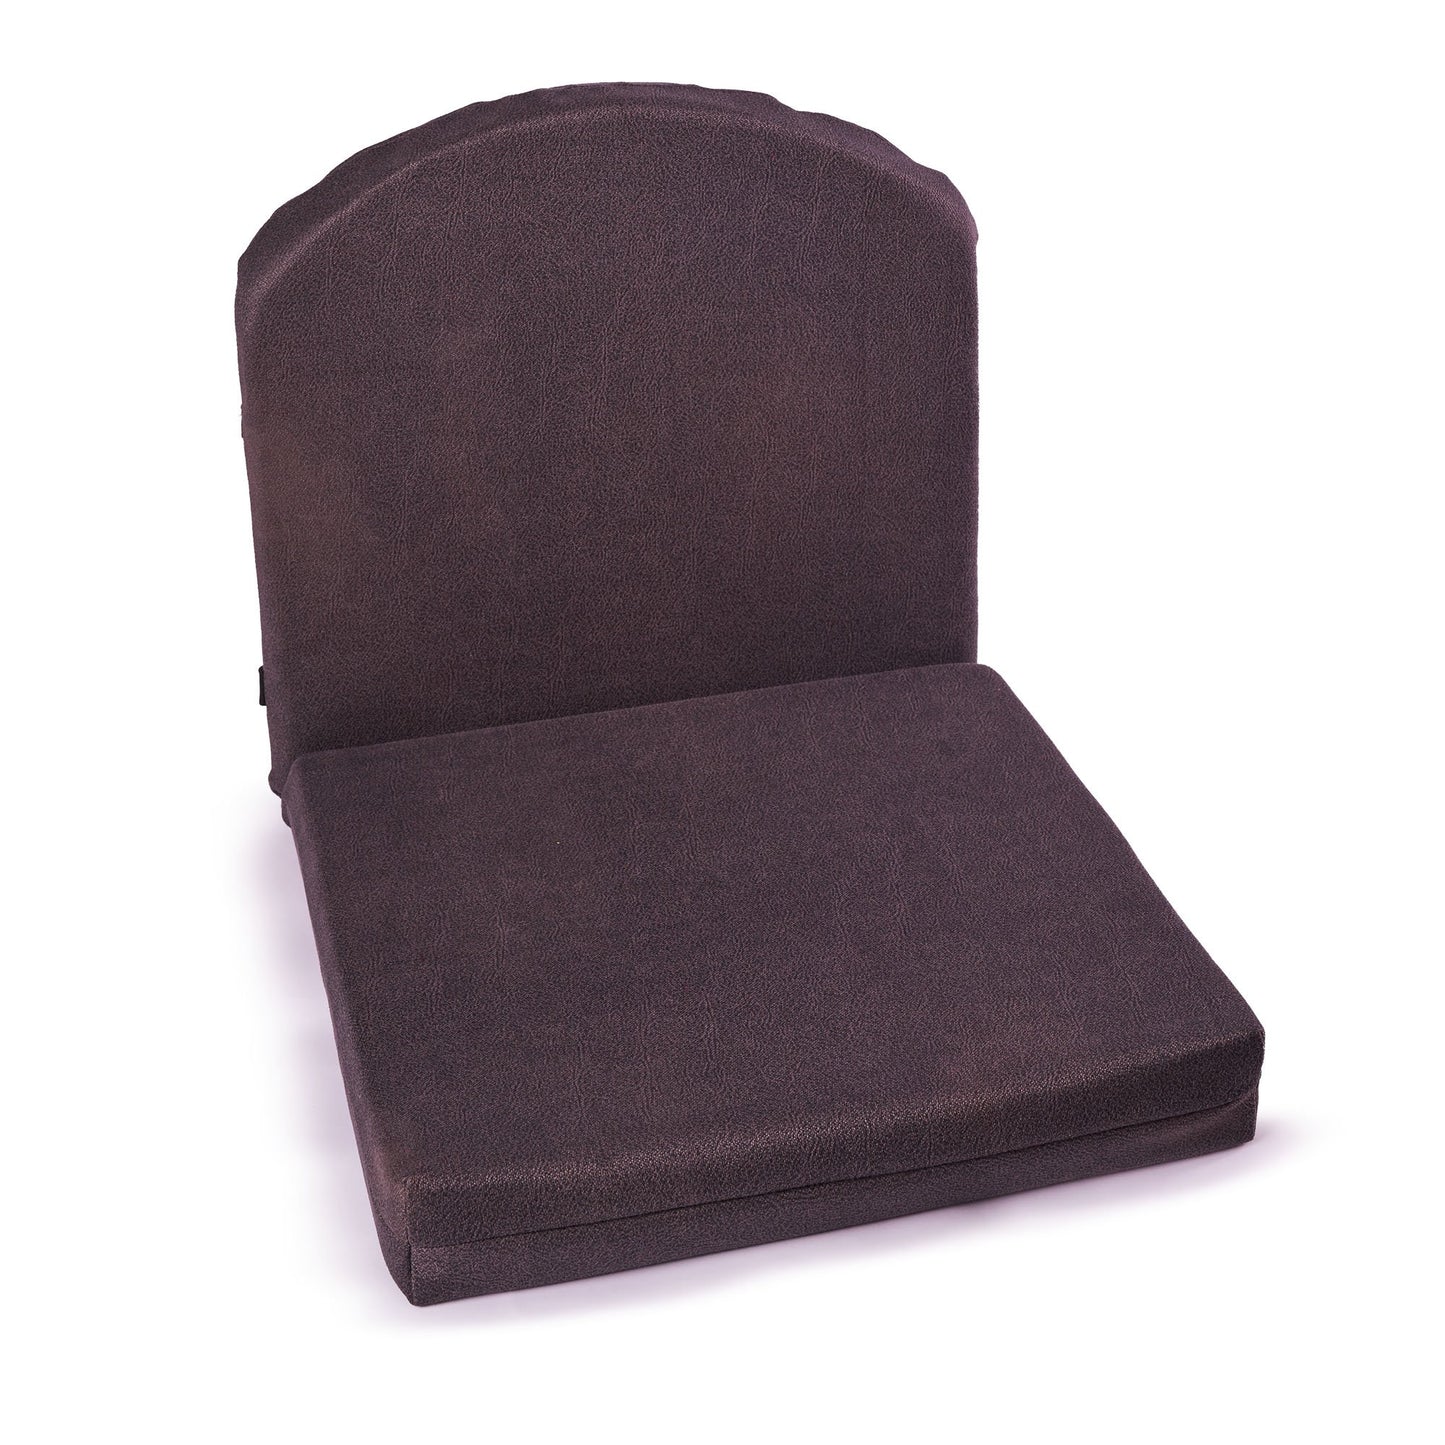 وسادة كرسي - PNG - 006